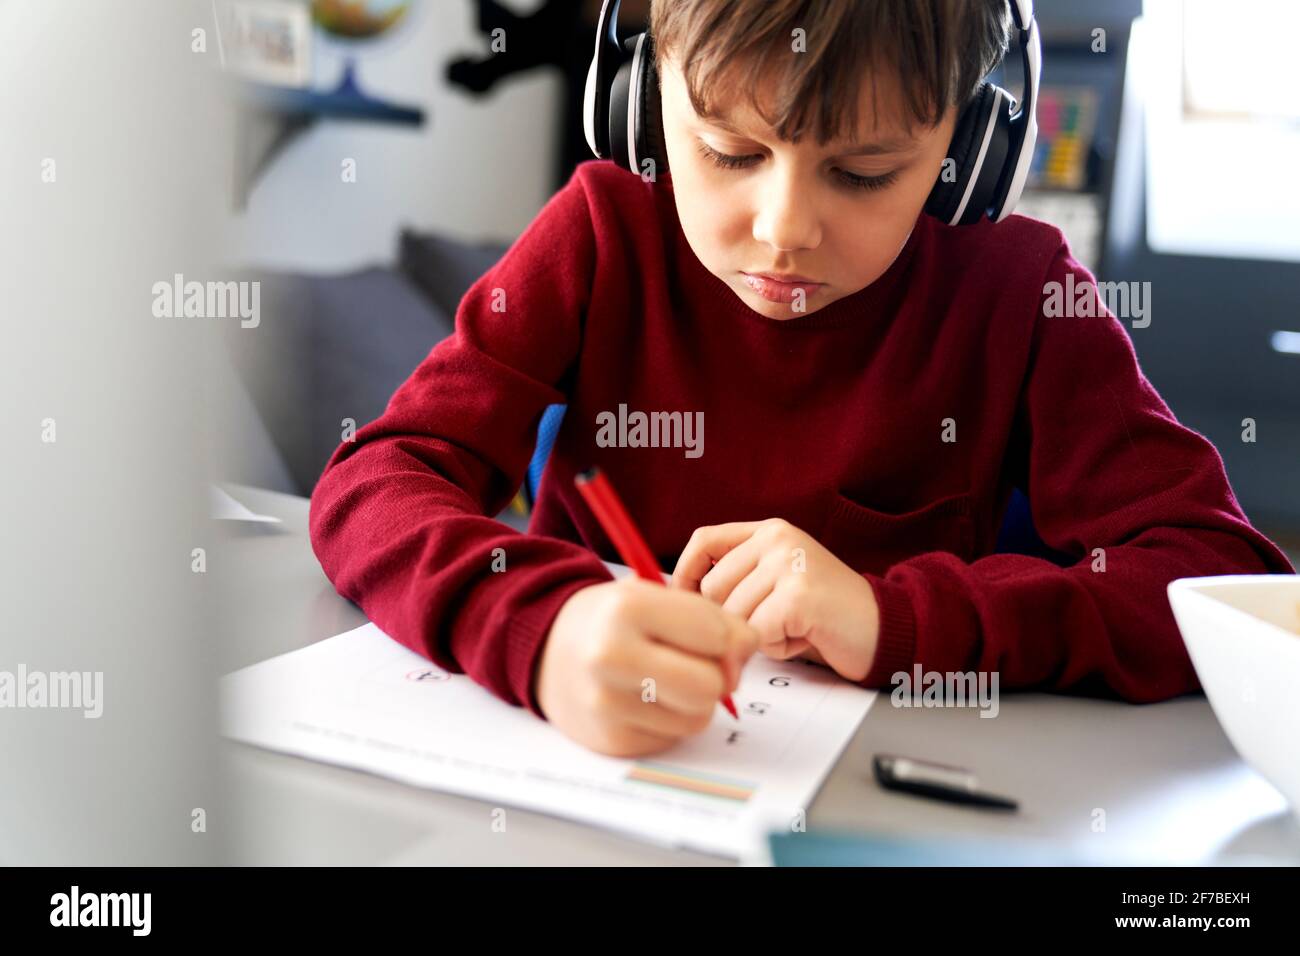 Gros plan d'un garçon qui fait ses devoirs pendant un verrouillage Banque D'Images